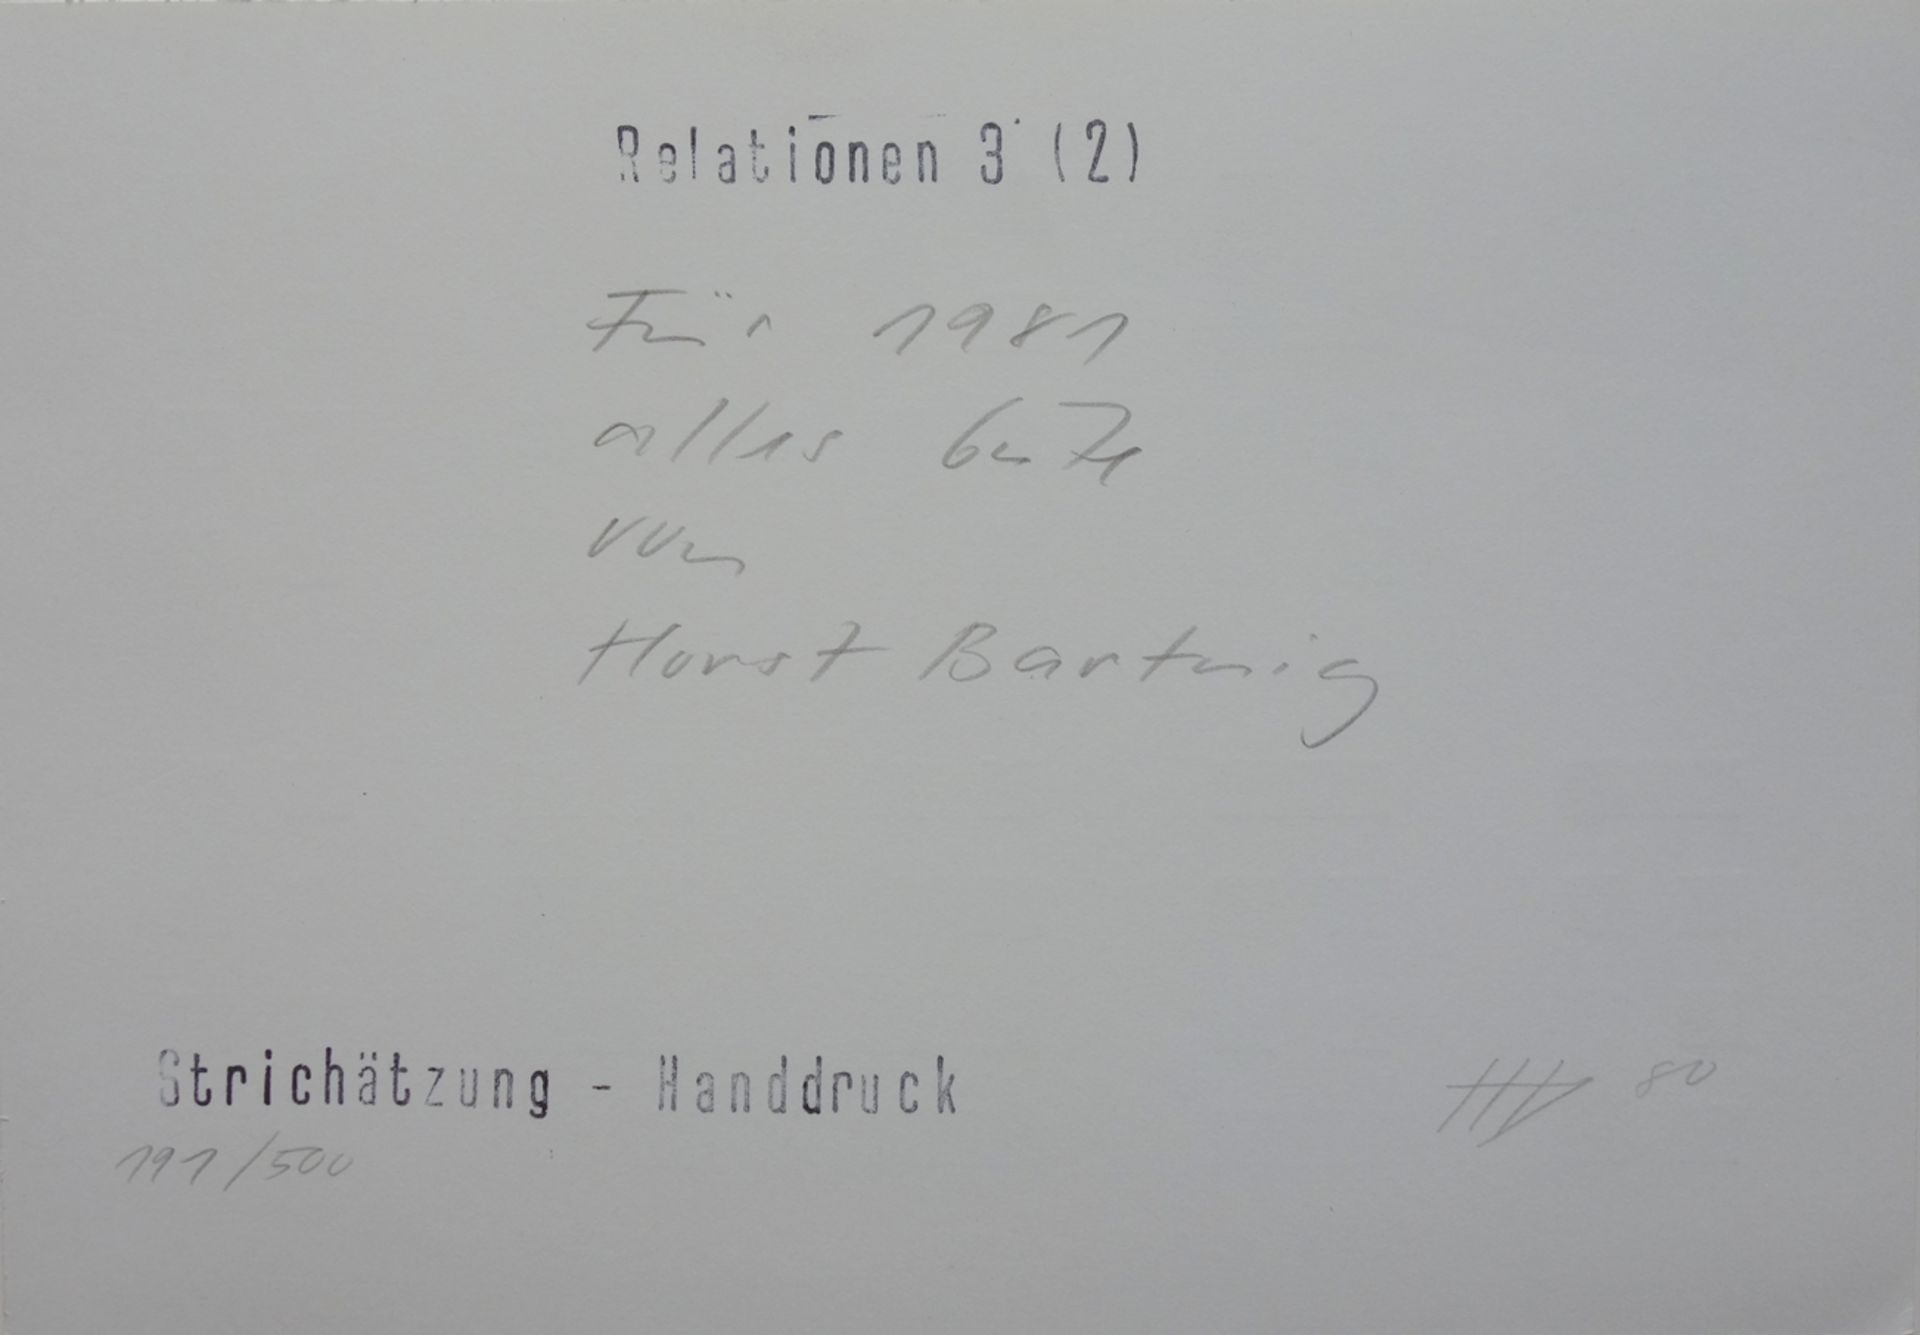 Horst Bartnig (*1936, Militsch), "Relationen 3 (2)", 1980, line etching - Image 2 of 2